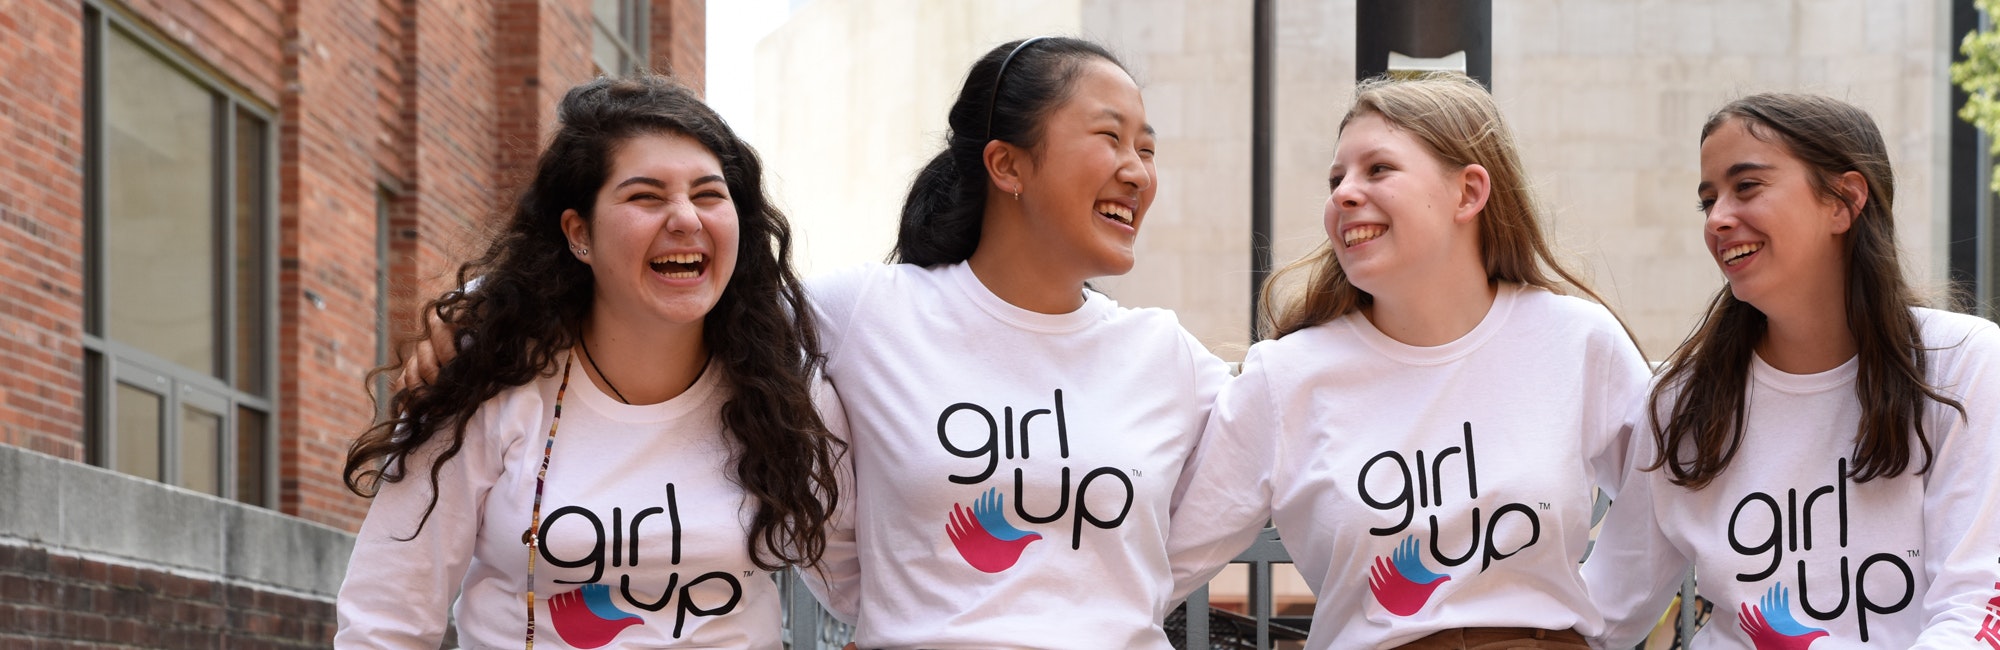 Cuatro chicas de Girl Up de diferentes etnias con camisetas de Girl Up (foto grupal) abrazadas.